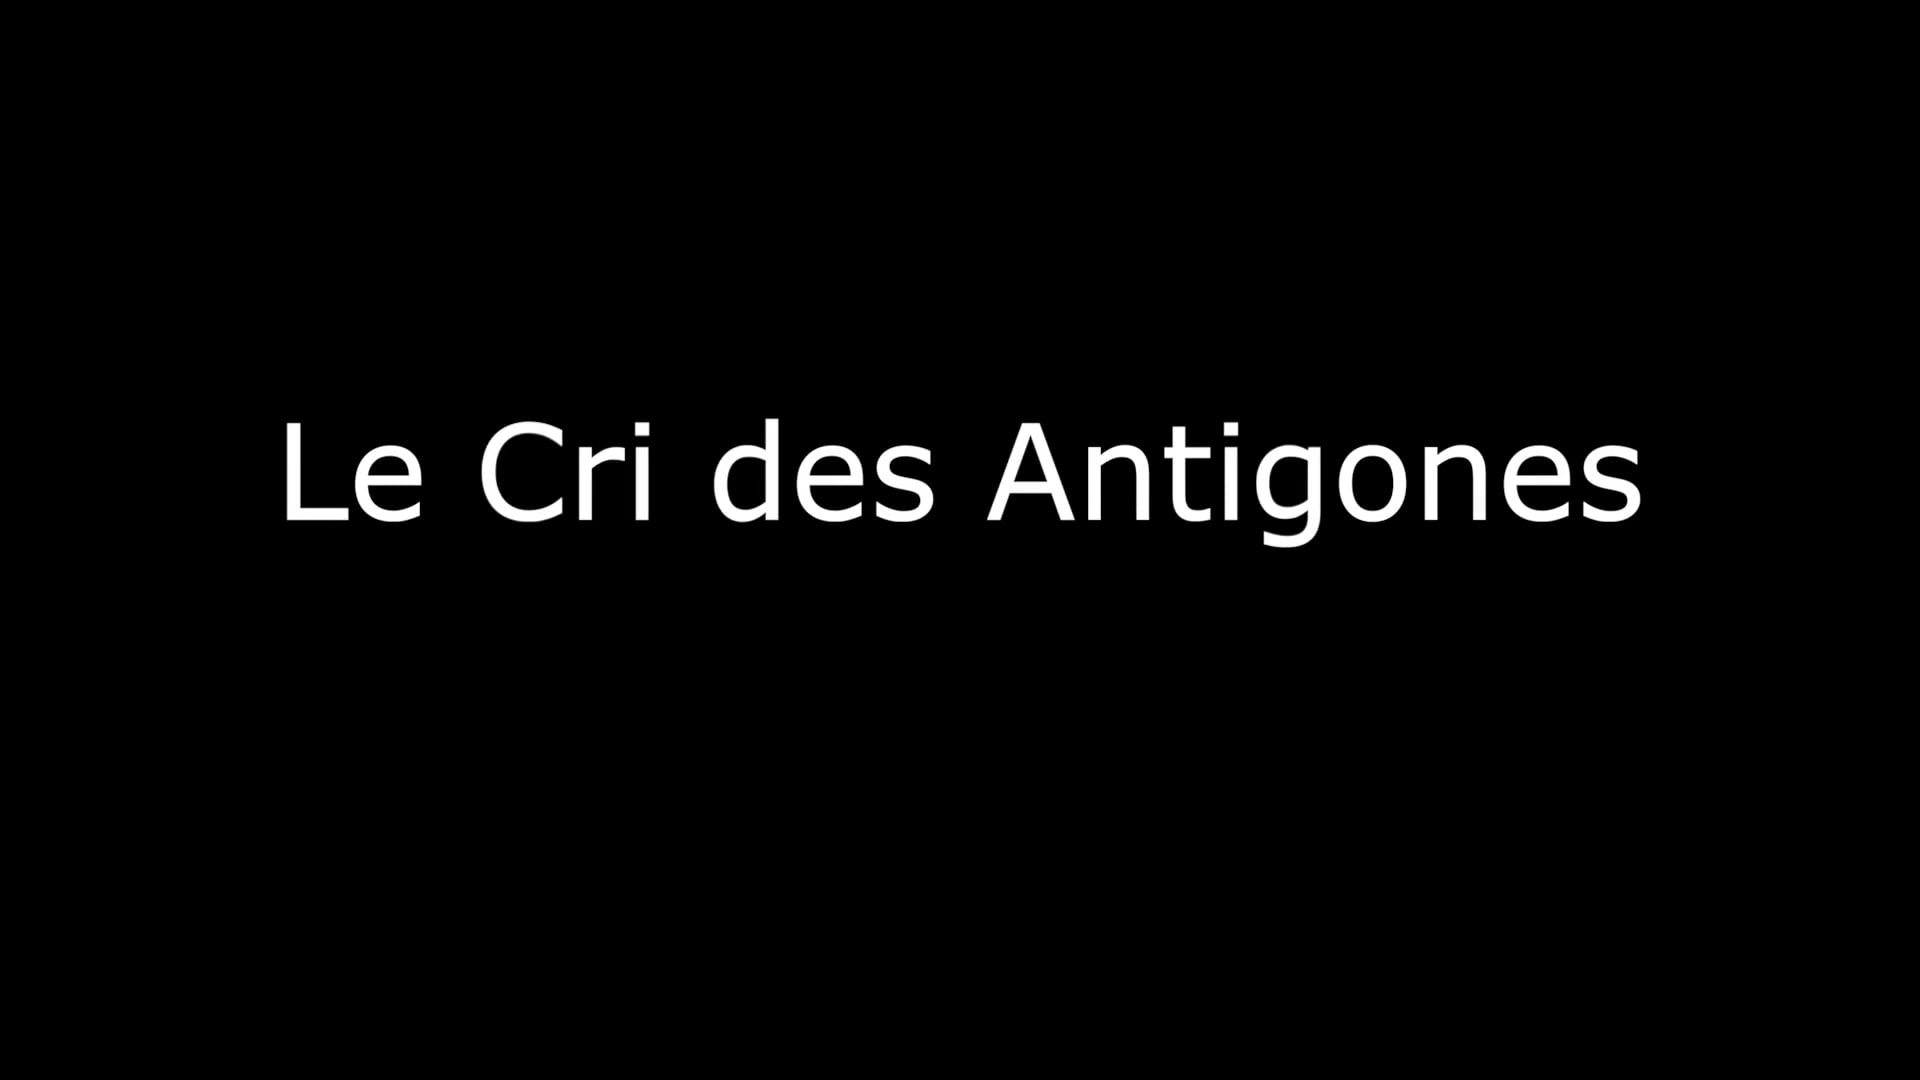 Le Cri des Antigones - Teaser